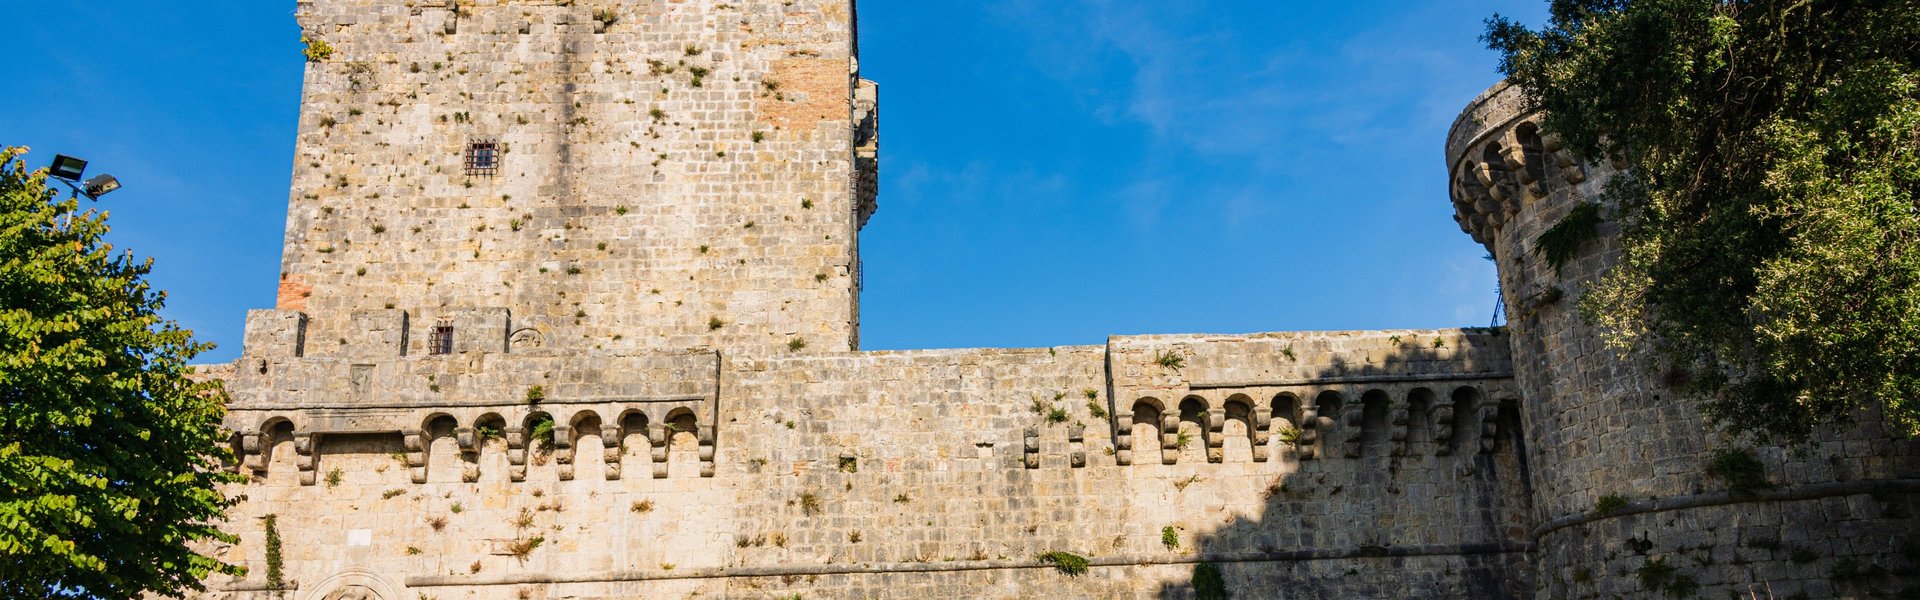 Castello di Sarteano. Esterno